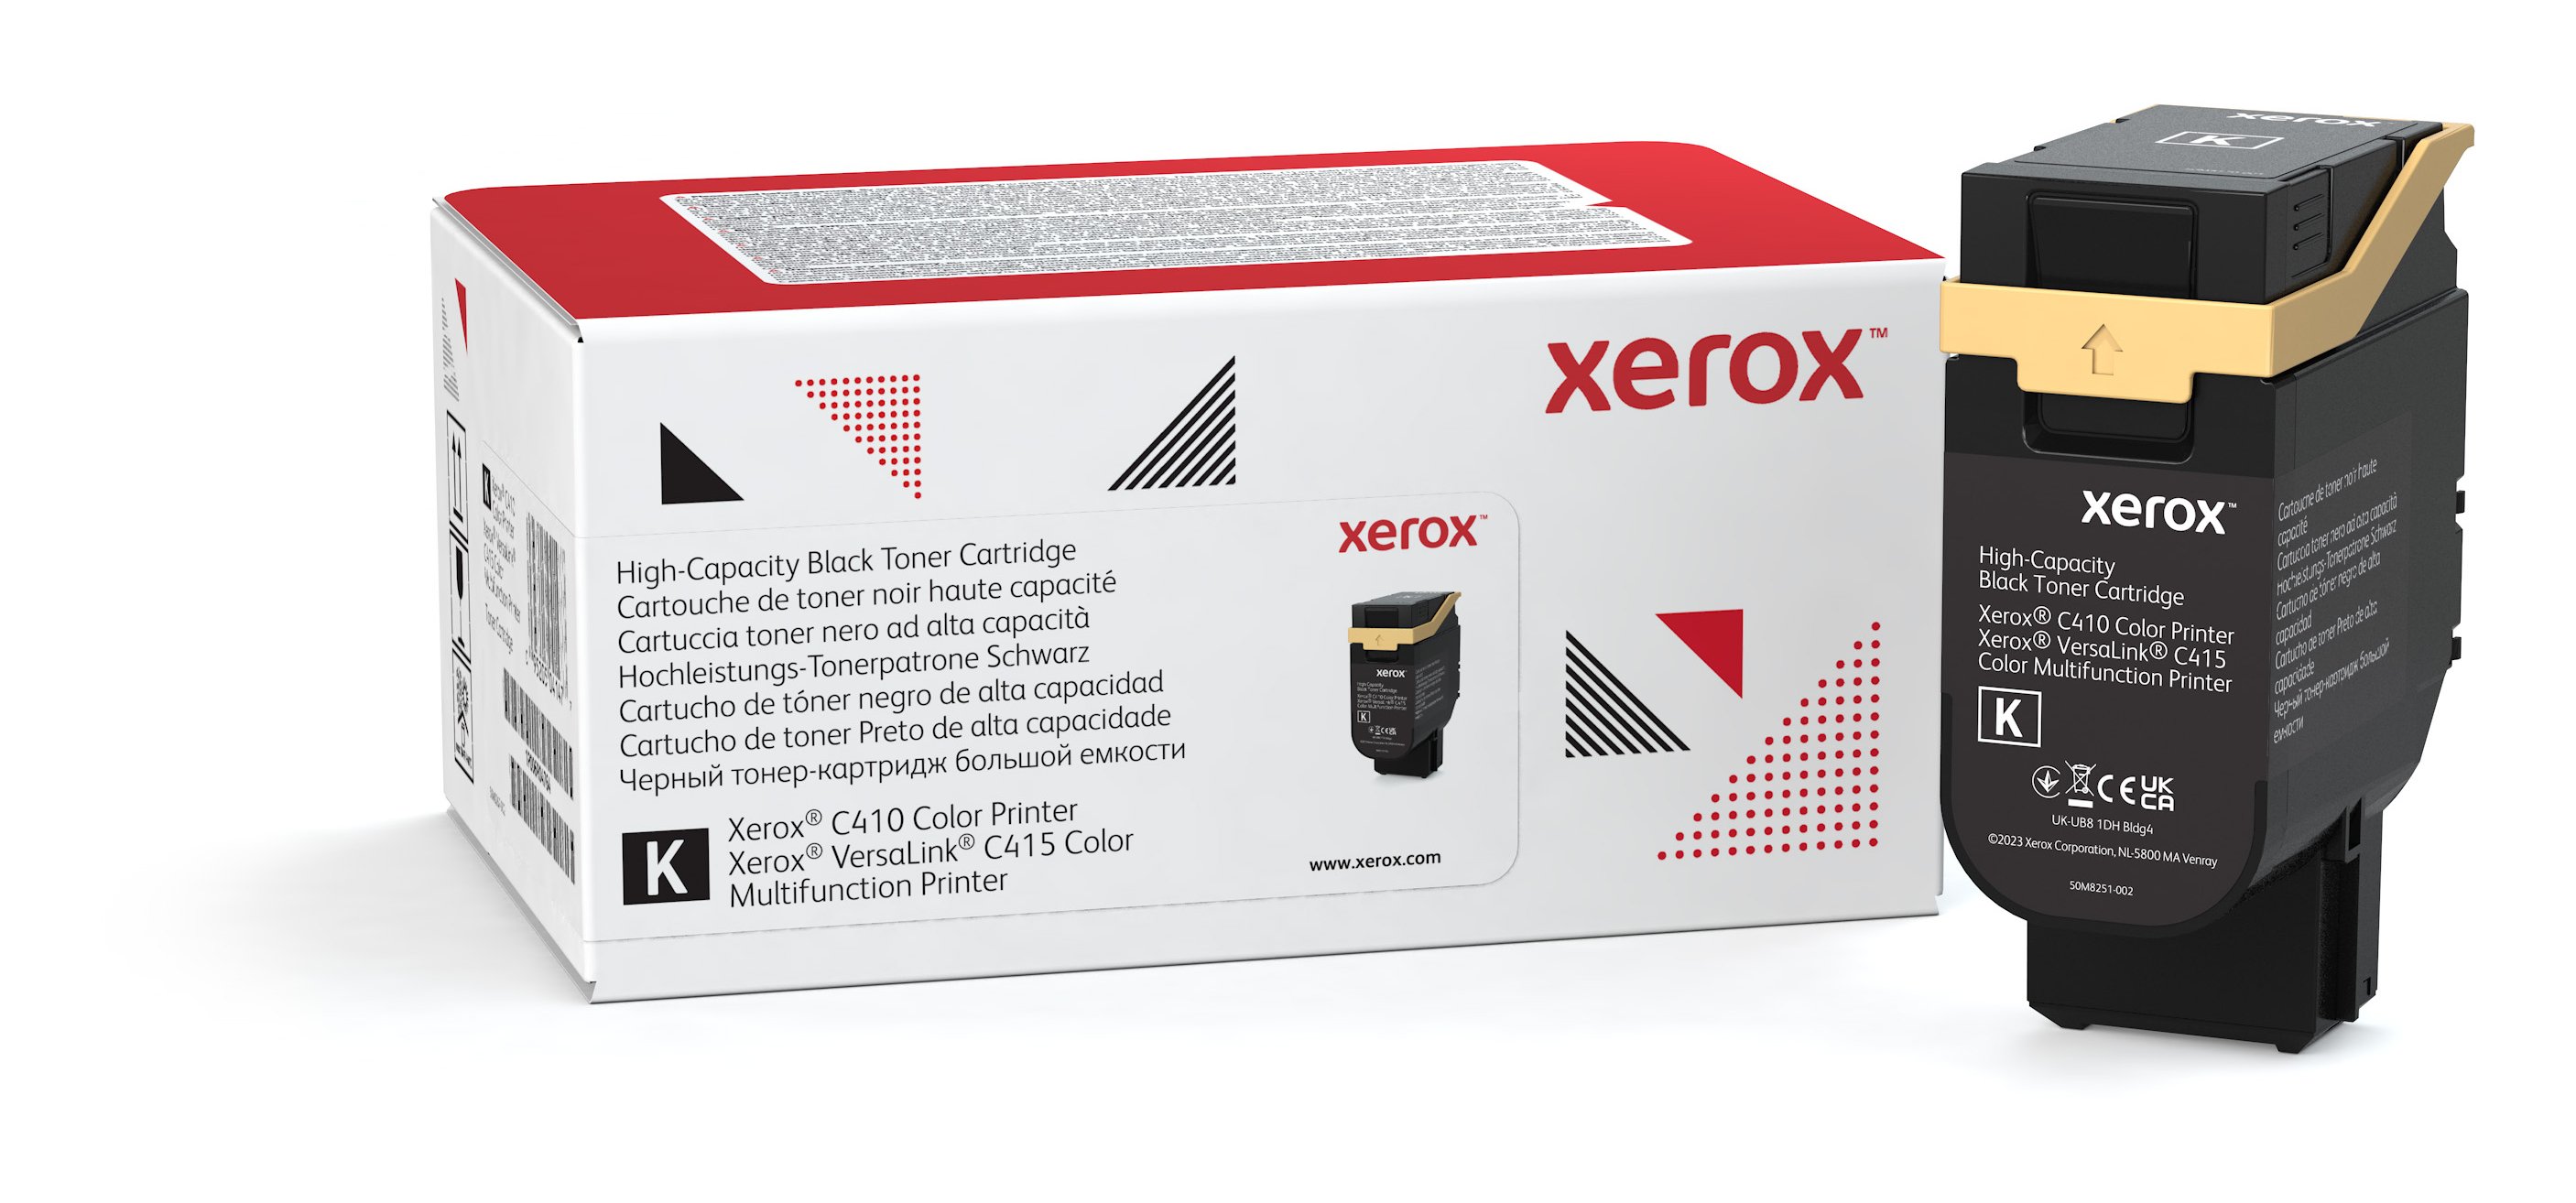 Xerox Cartouche de toner Noir VersaLink C415 Color Multifunction Printer - 006R04685